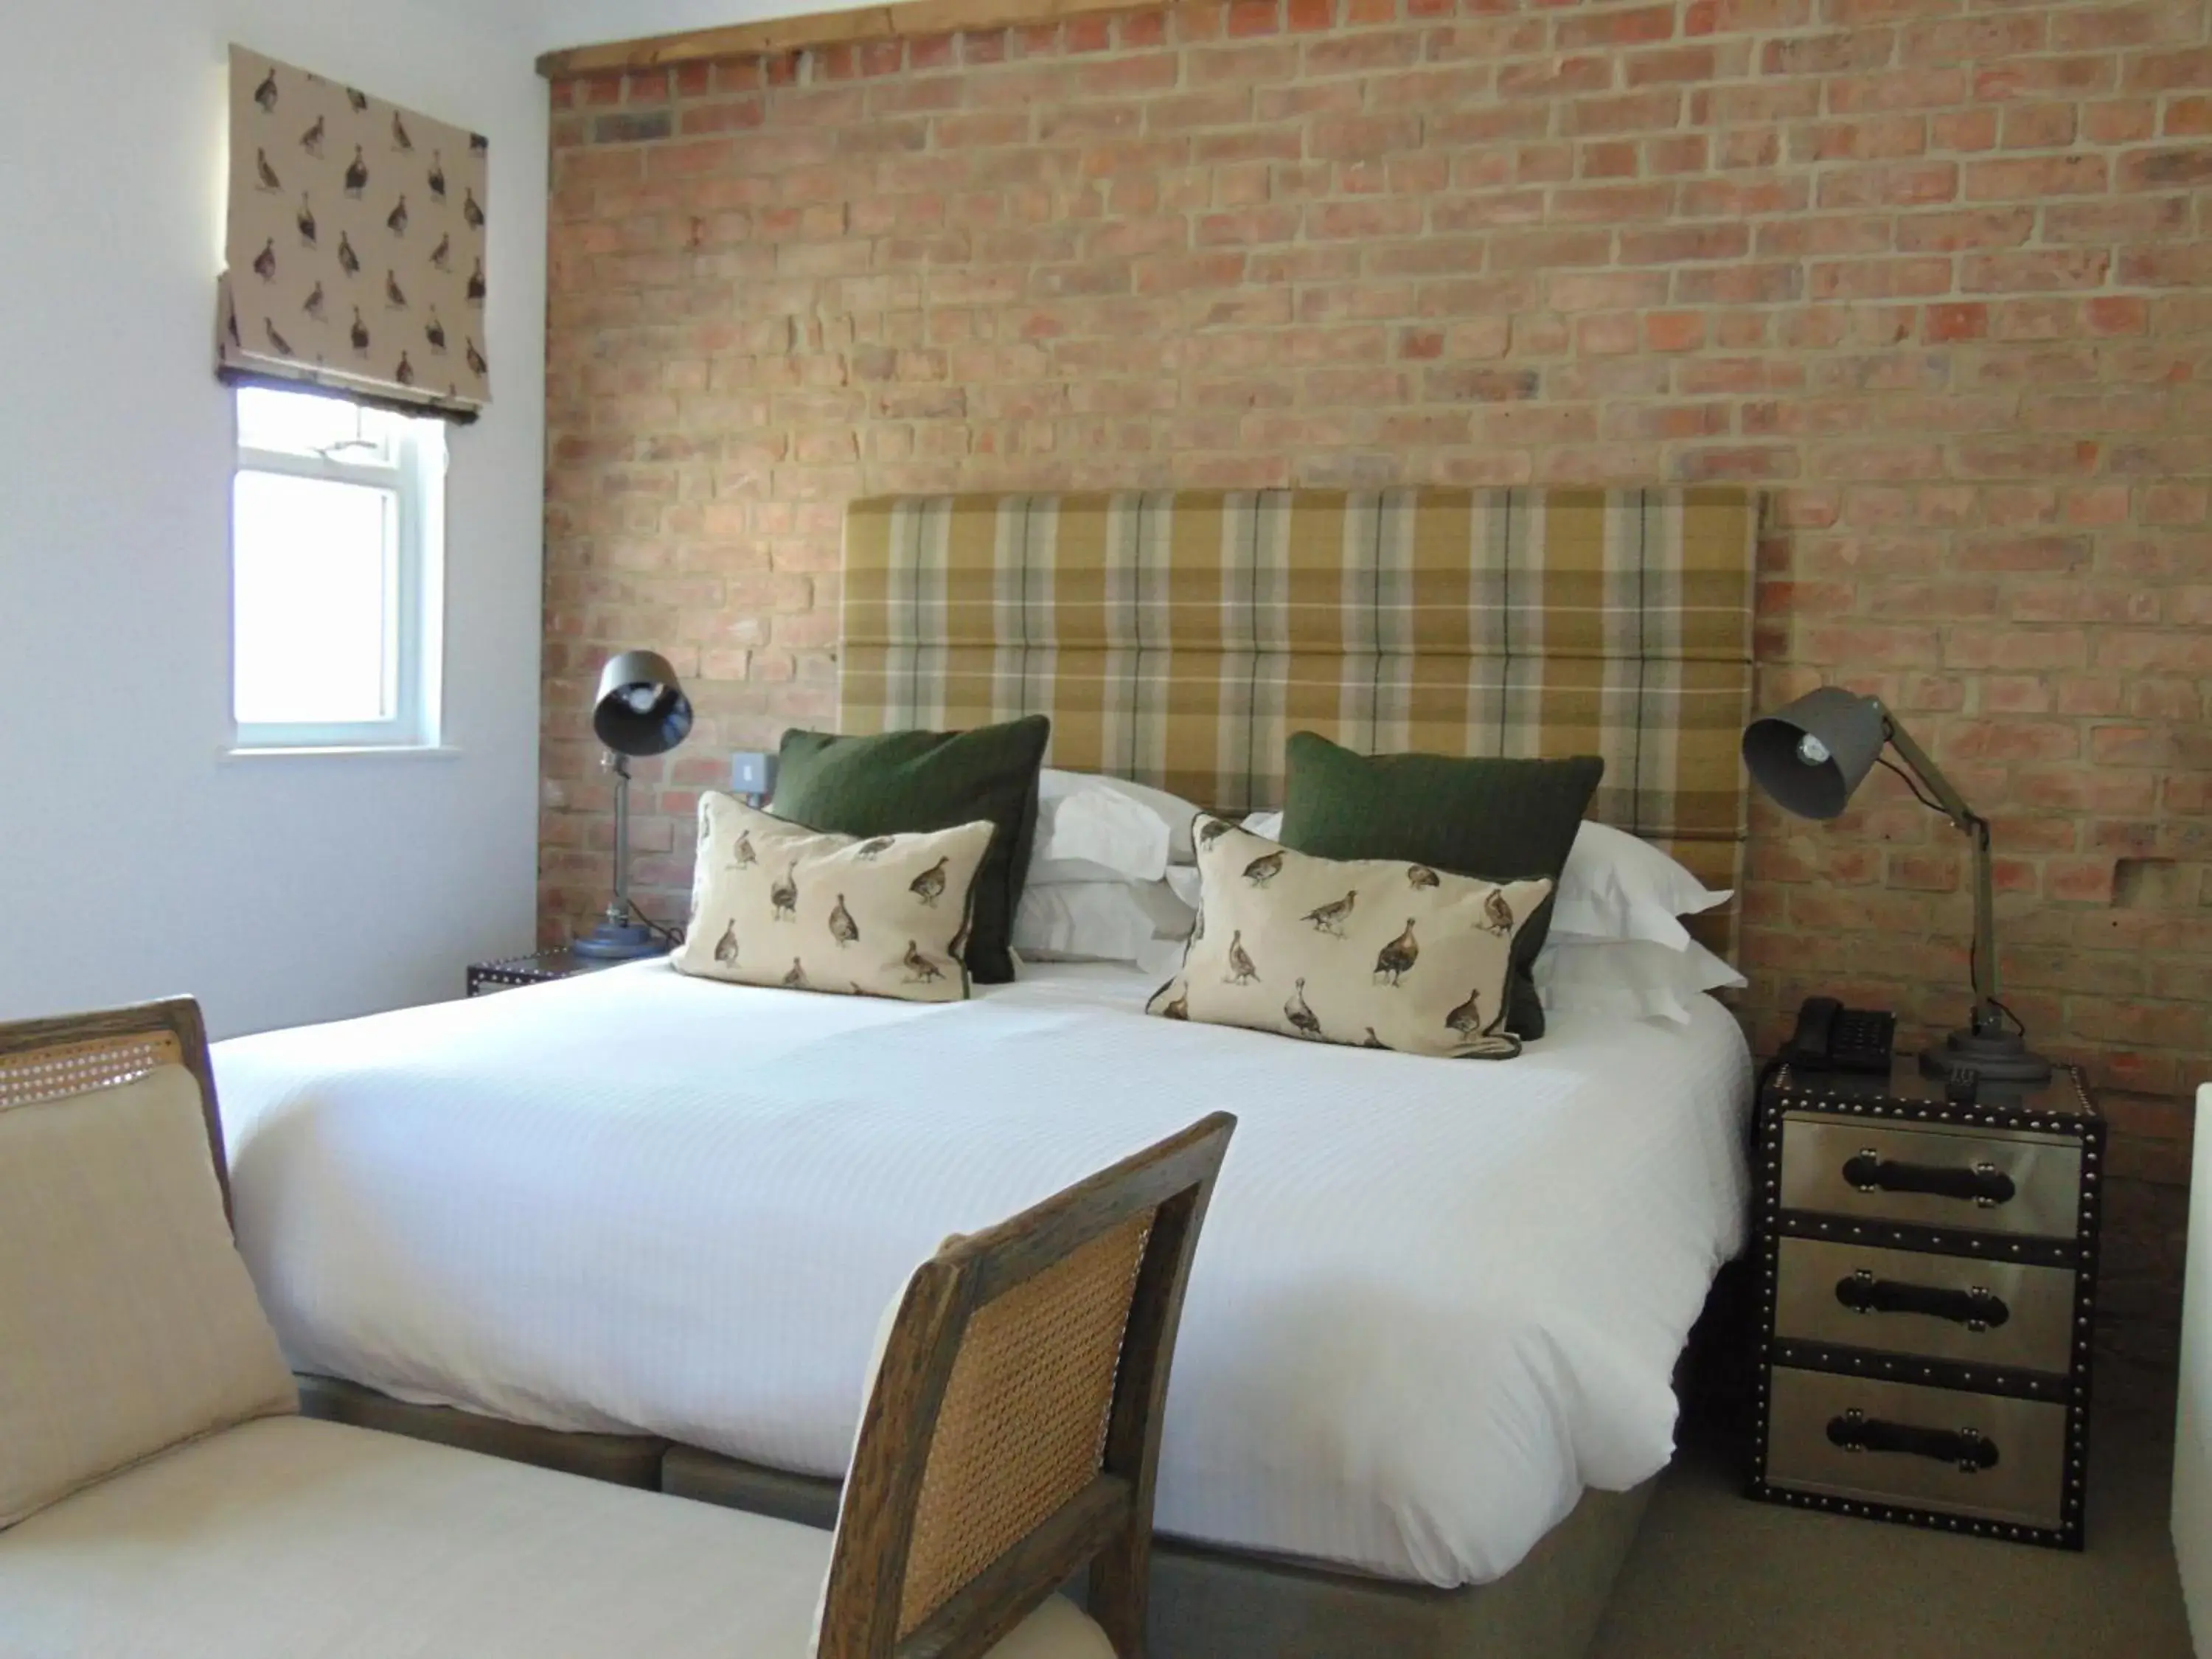 Bed, Room Photo in The Gannet Inn